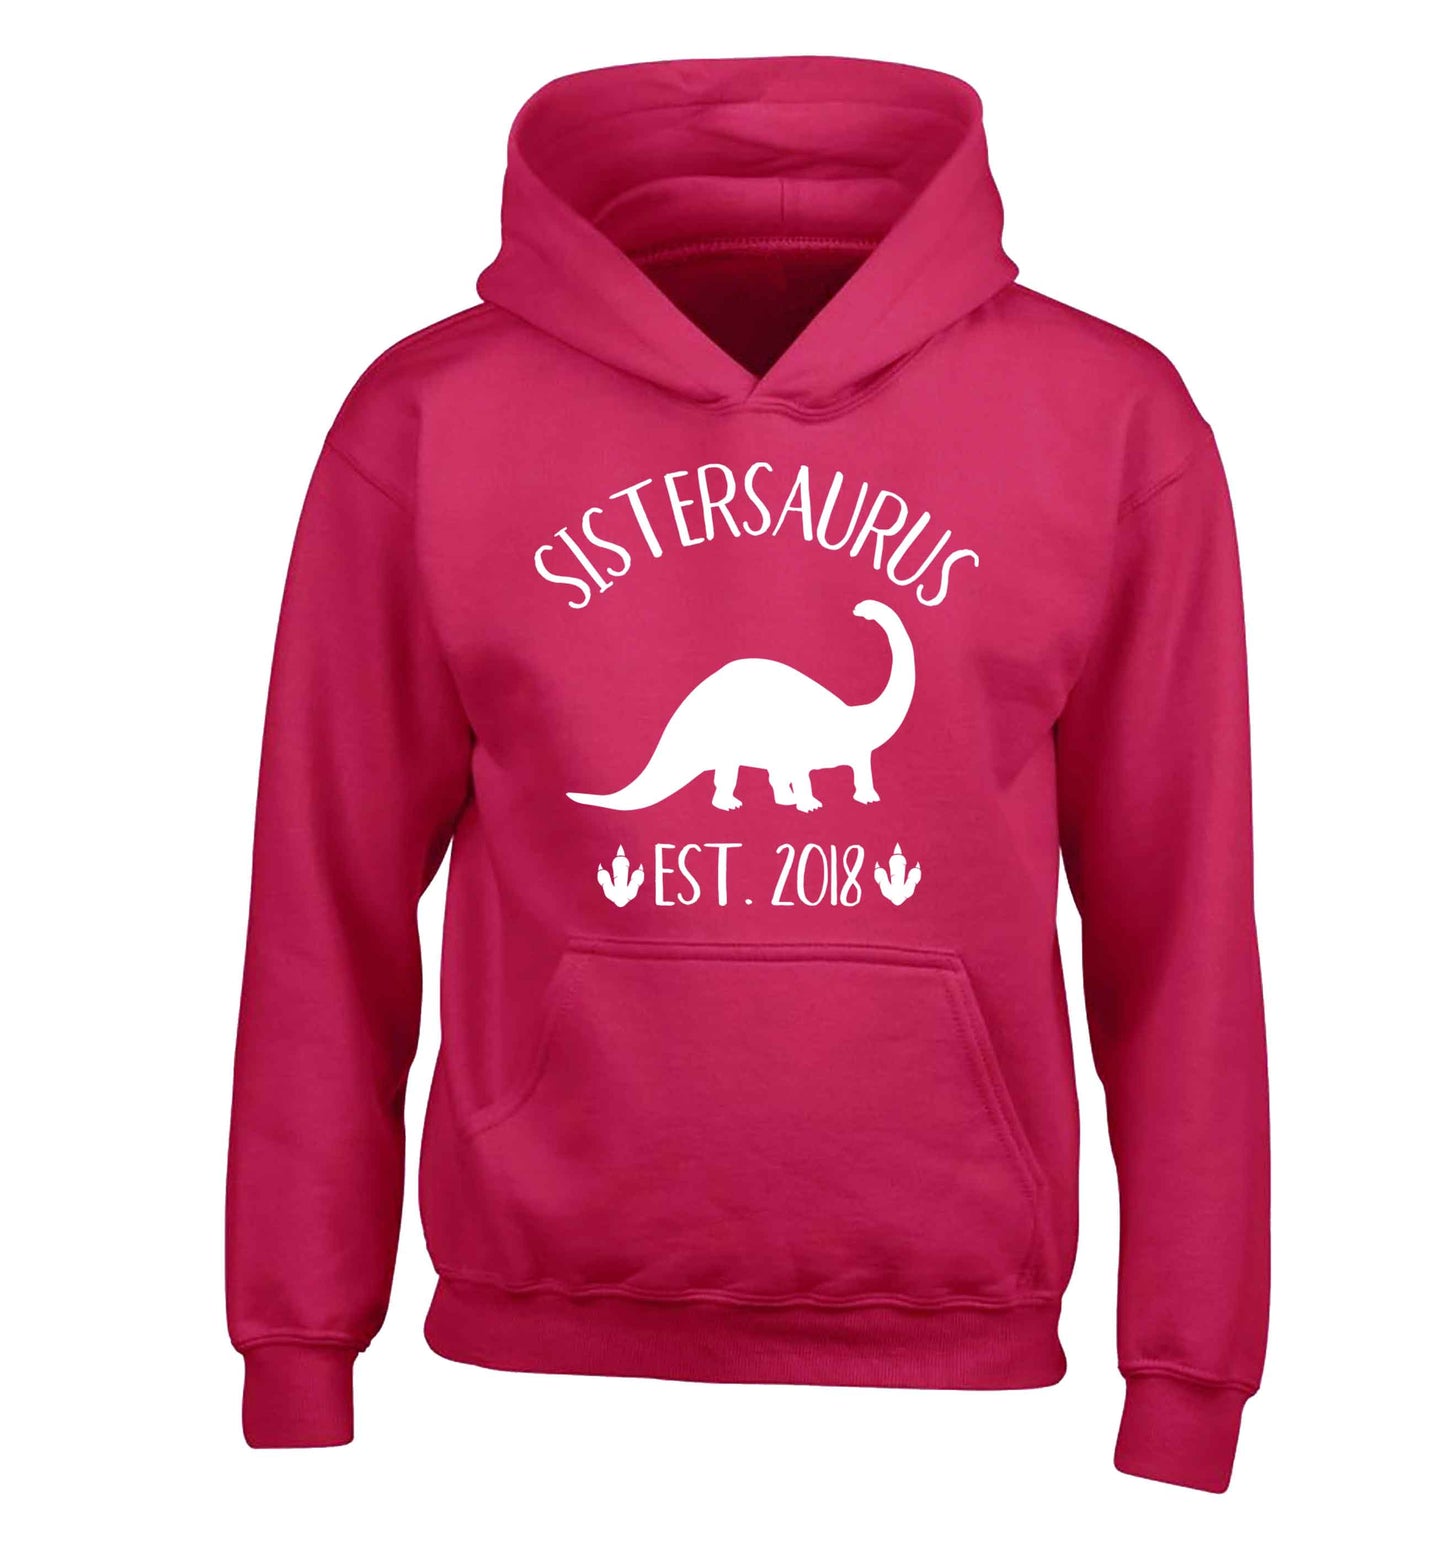 Personalised sistersaurus since (custom date) children's pink hoodie 12-13 Years